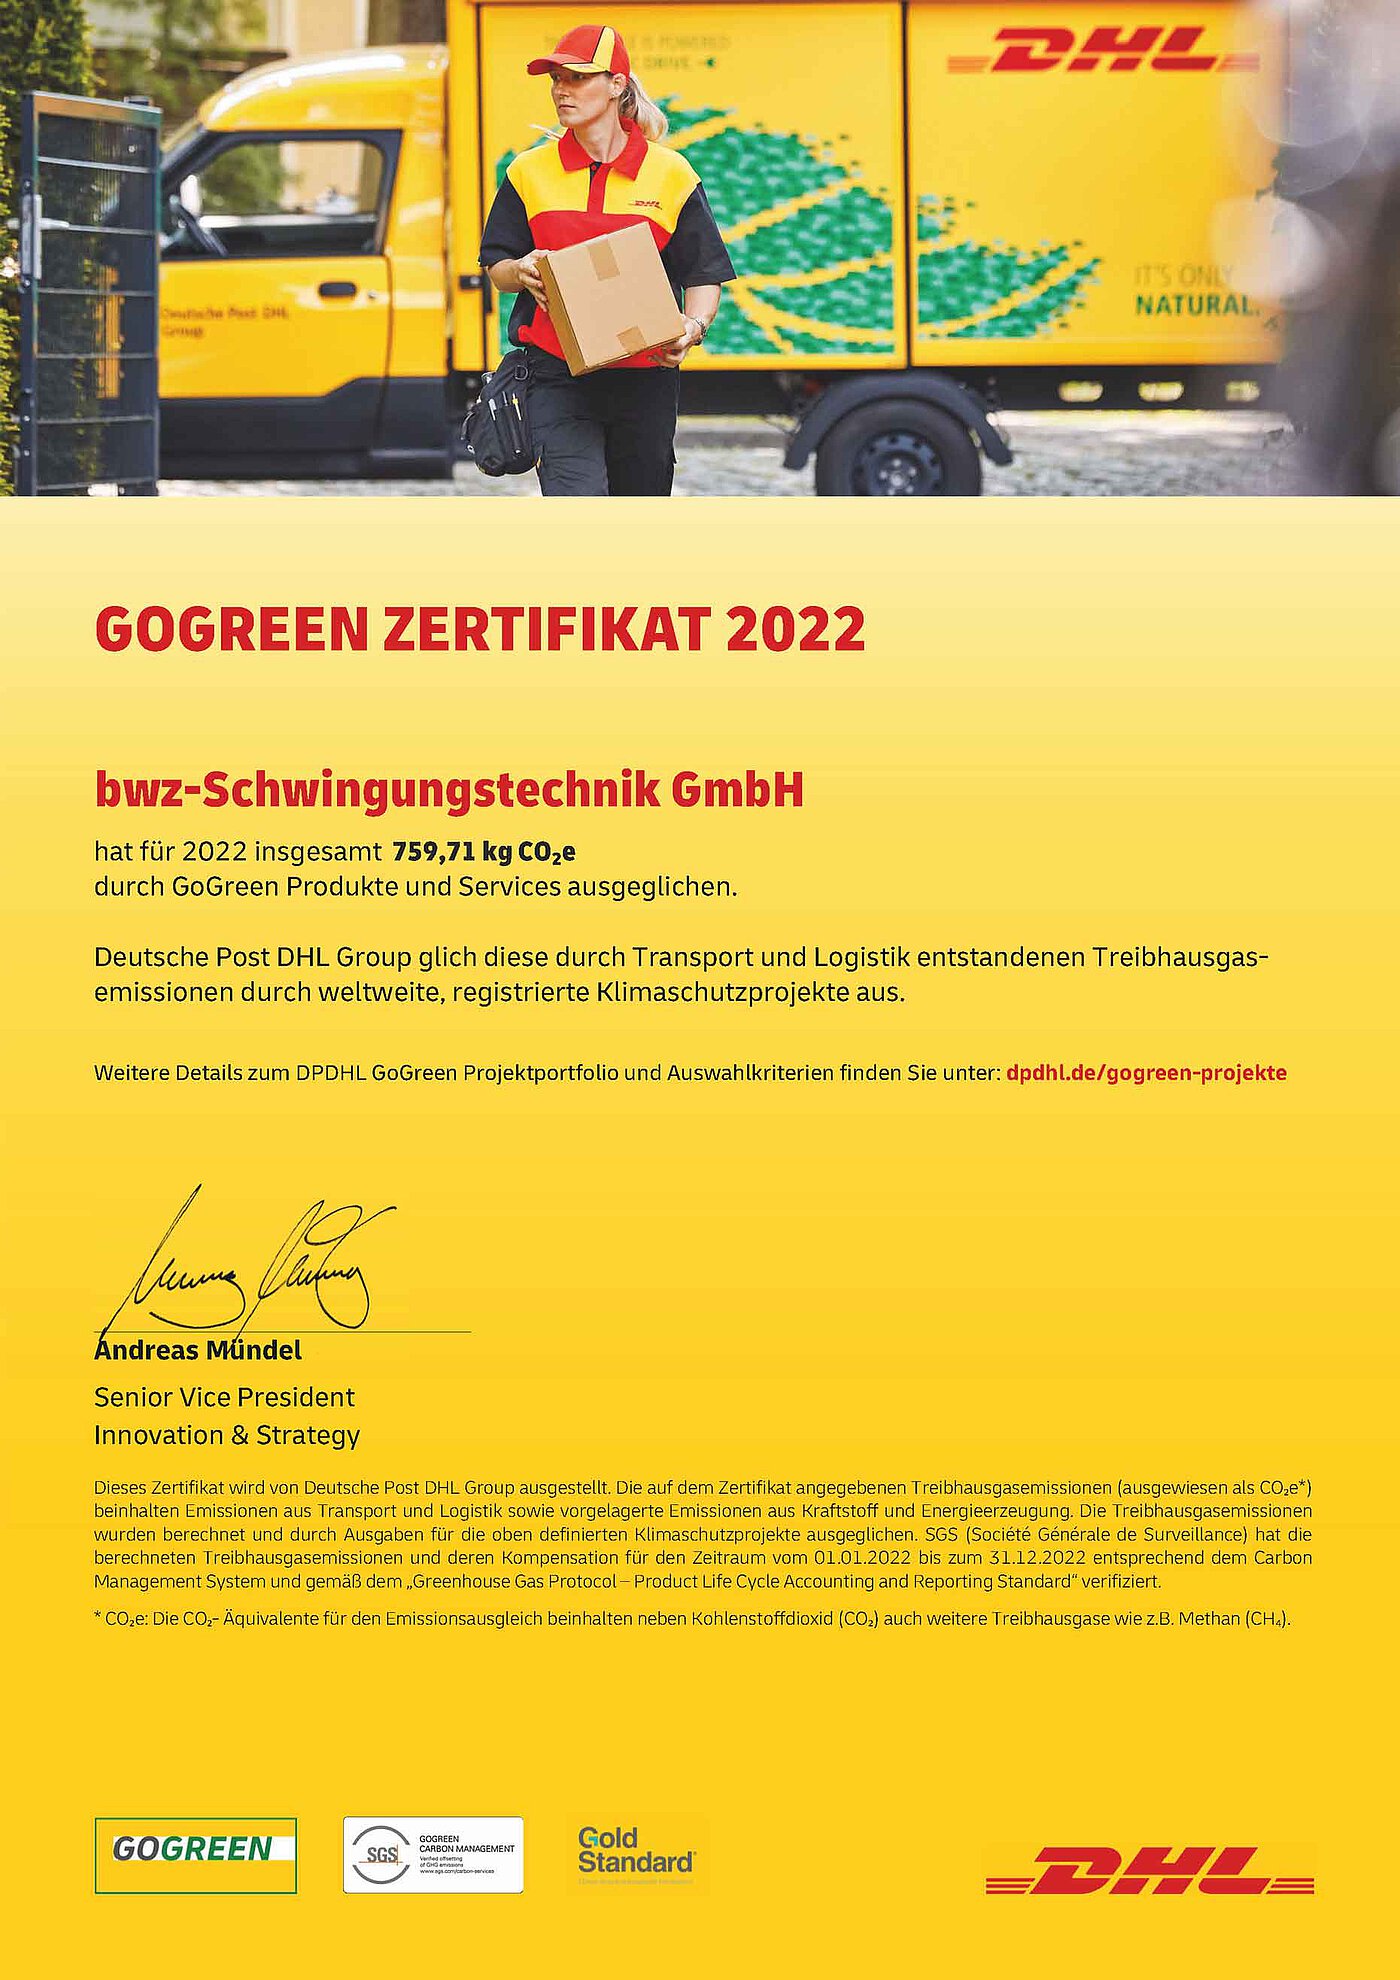 eine gelbe Urkunde vom Paketdienstleister DHL, auf welcher vermerkt ist, daß bwz Schwingungstechnik durch die Nutzung von GoGreen Produkten 759,71 KG CO2-Äquivalente im Jahr 2022 eingespart hat